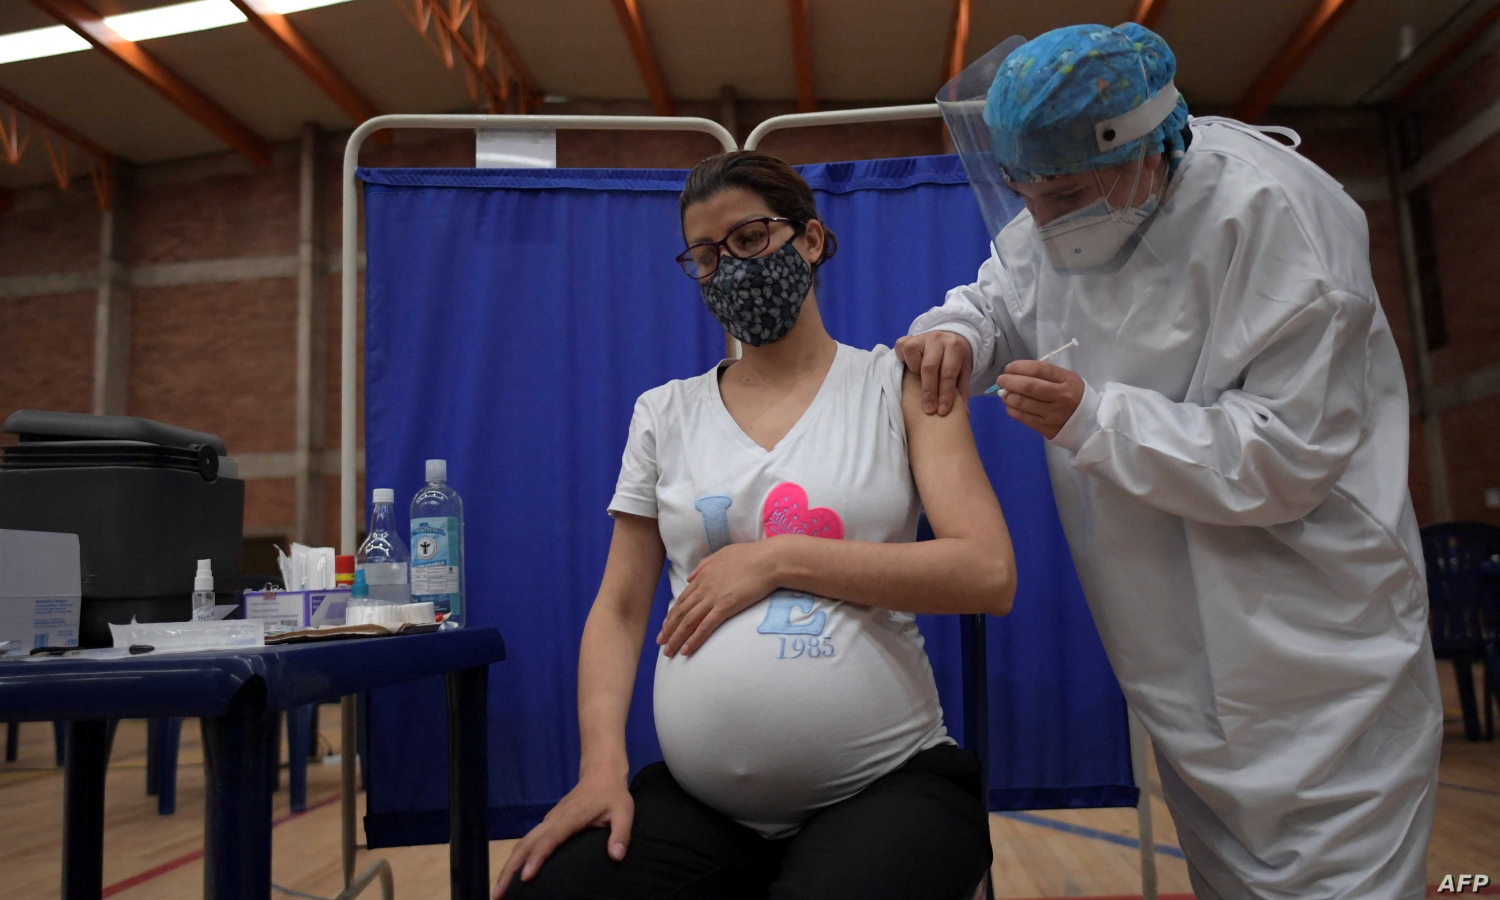 سيدة حامل تتلقى لقاح "كورونا" في أمريكا (AFP)